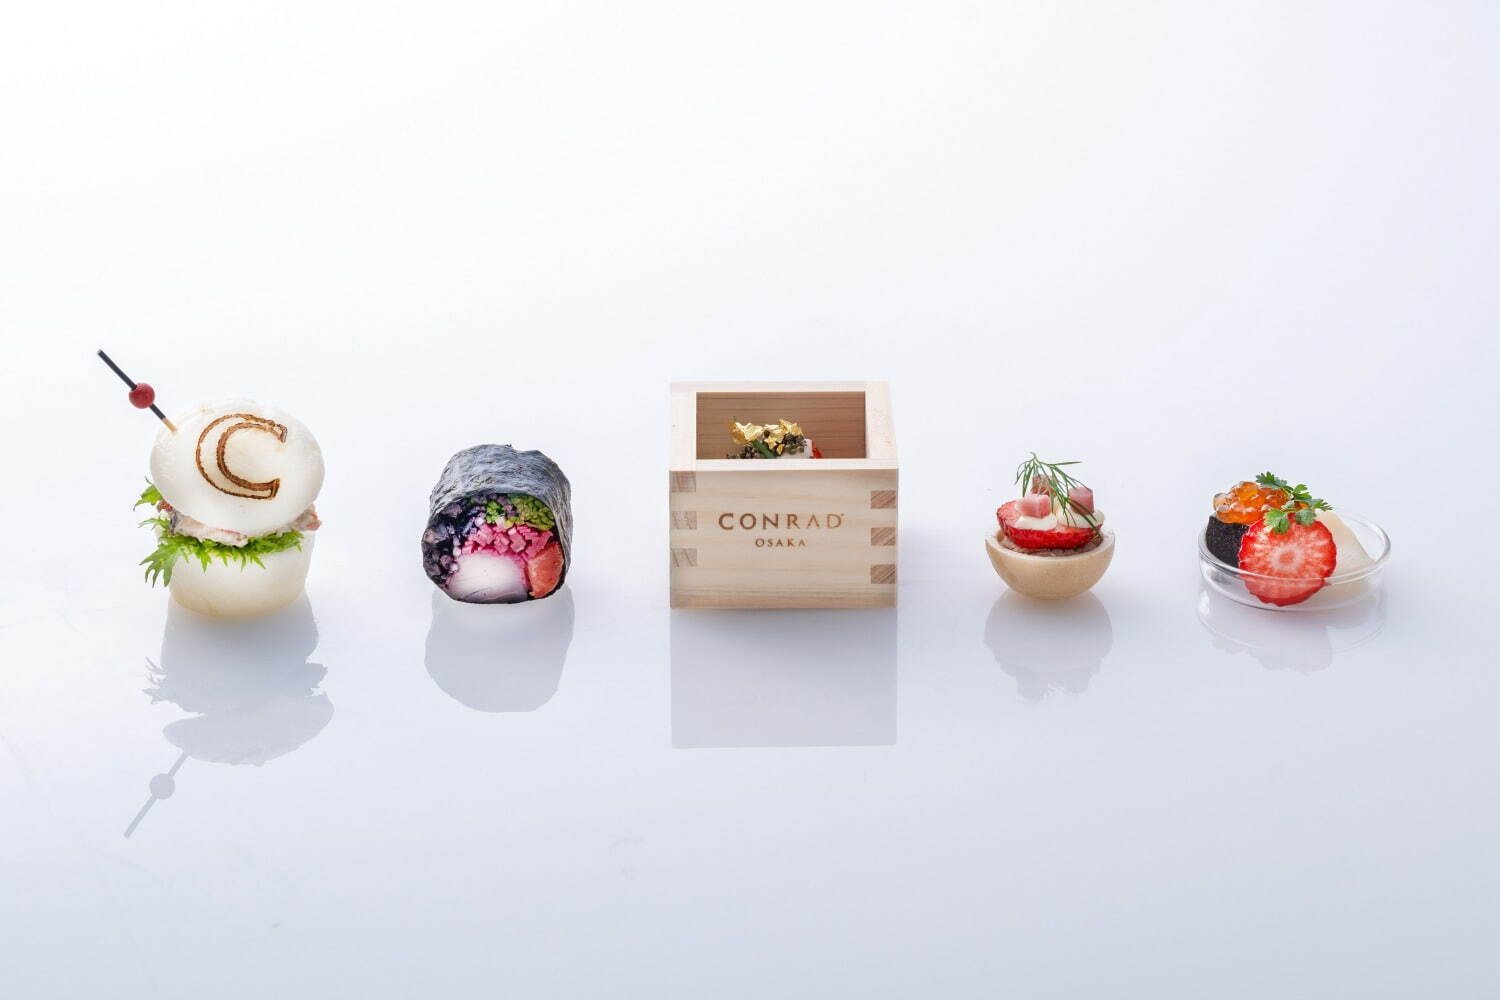 (左から)「和風ローストビーフ」「桜の香りの真鯛」「イチゴととんぶり」「近江鴨の最中」「黒胡麻豆腐」